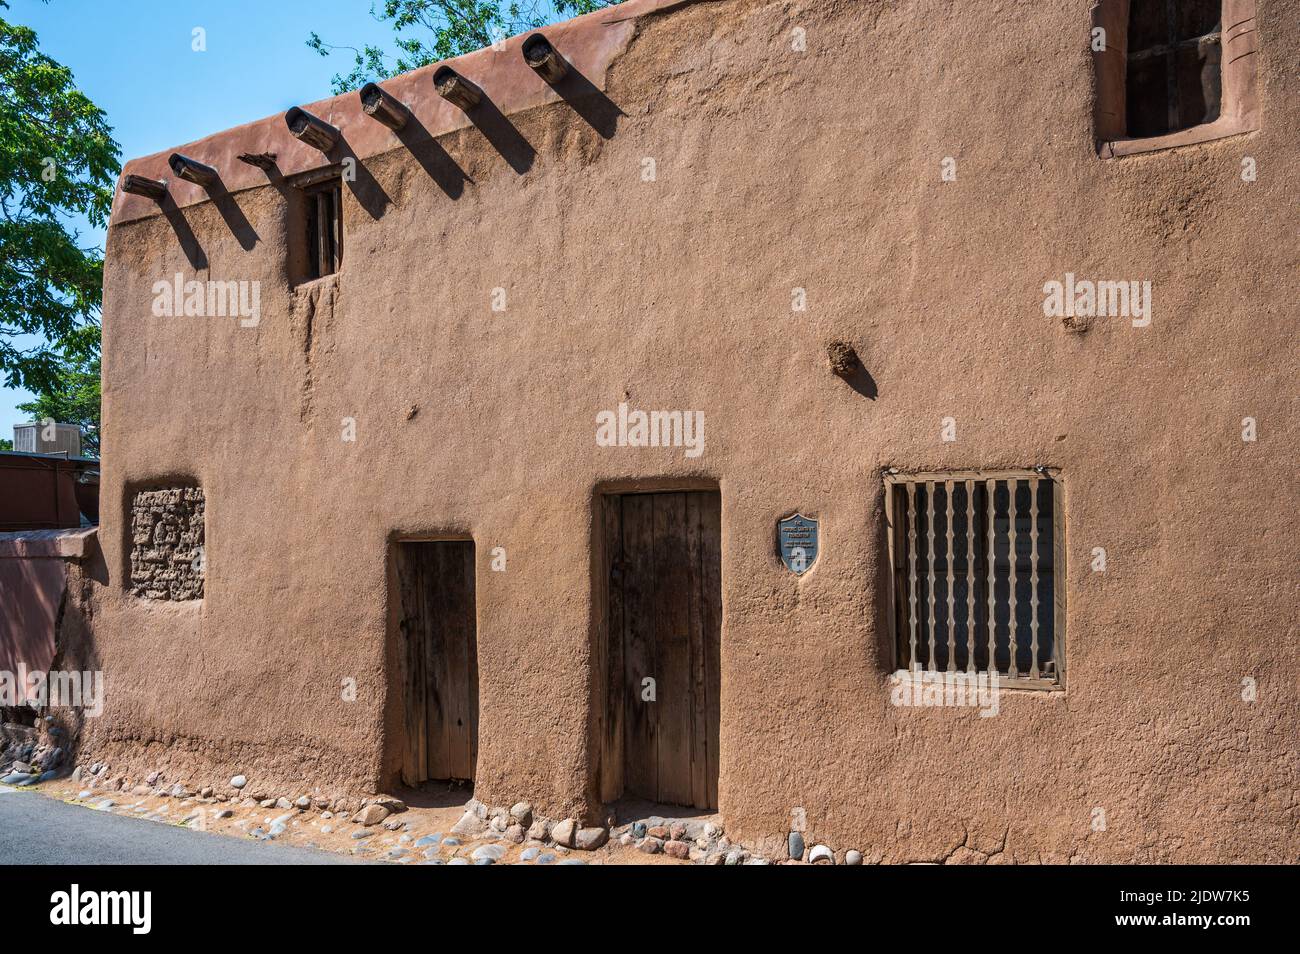 The 'Oldest' House. 215 E. De Vargas Street, Santa Fe, New Mexico, USA. Stock Photo